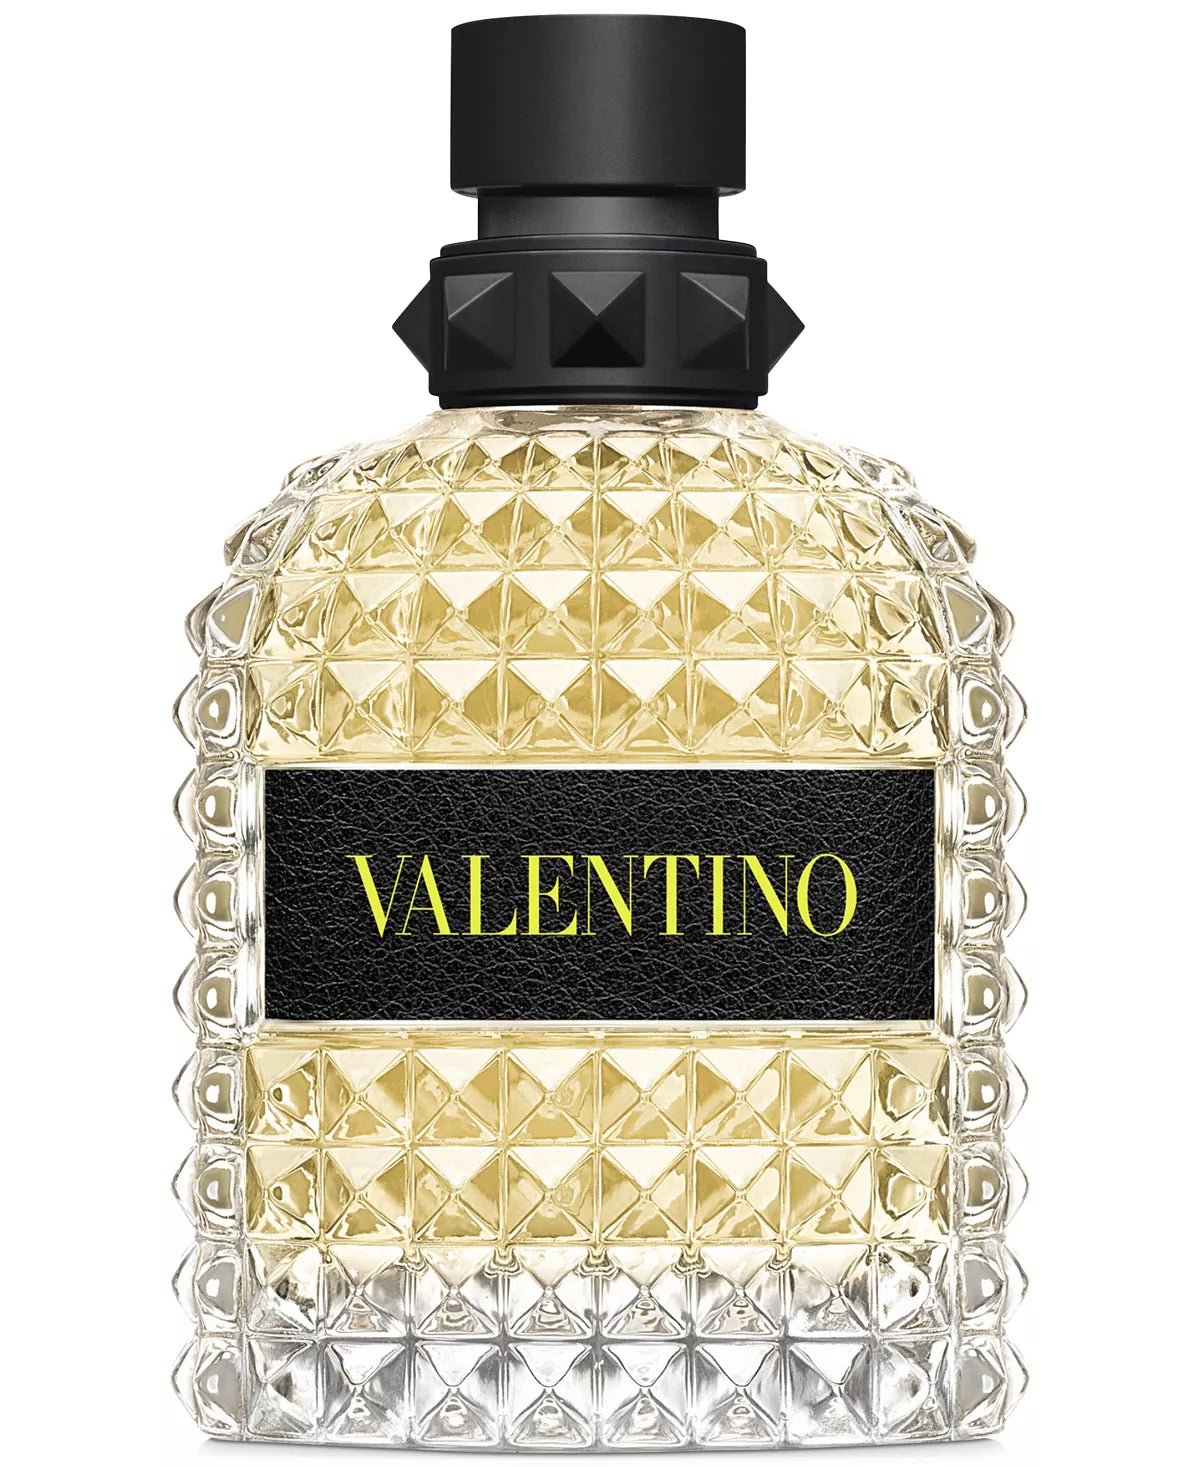 Valentino Uomo Born in Roma Yellow Dream EDT Spray 3.4 oz / 100 ml